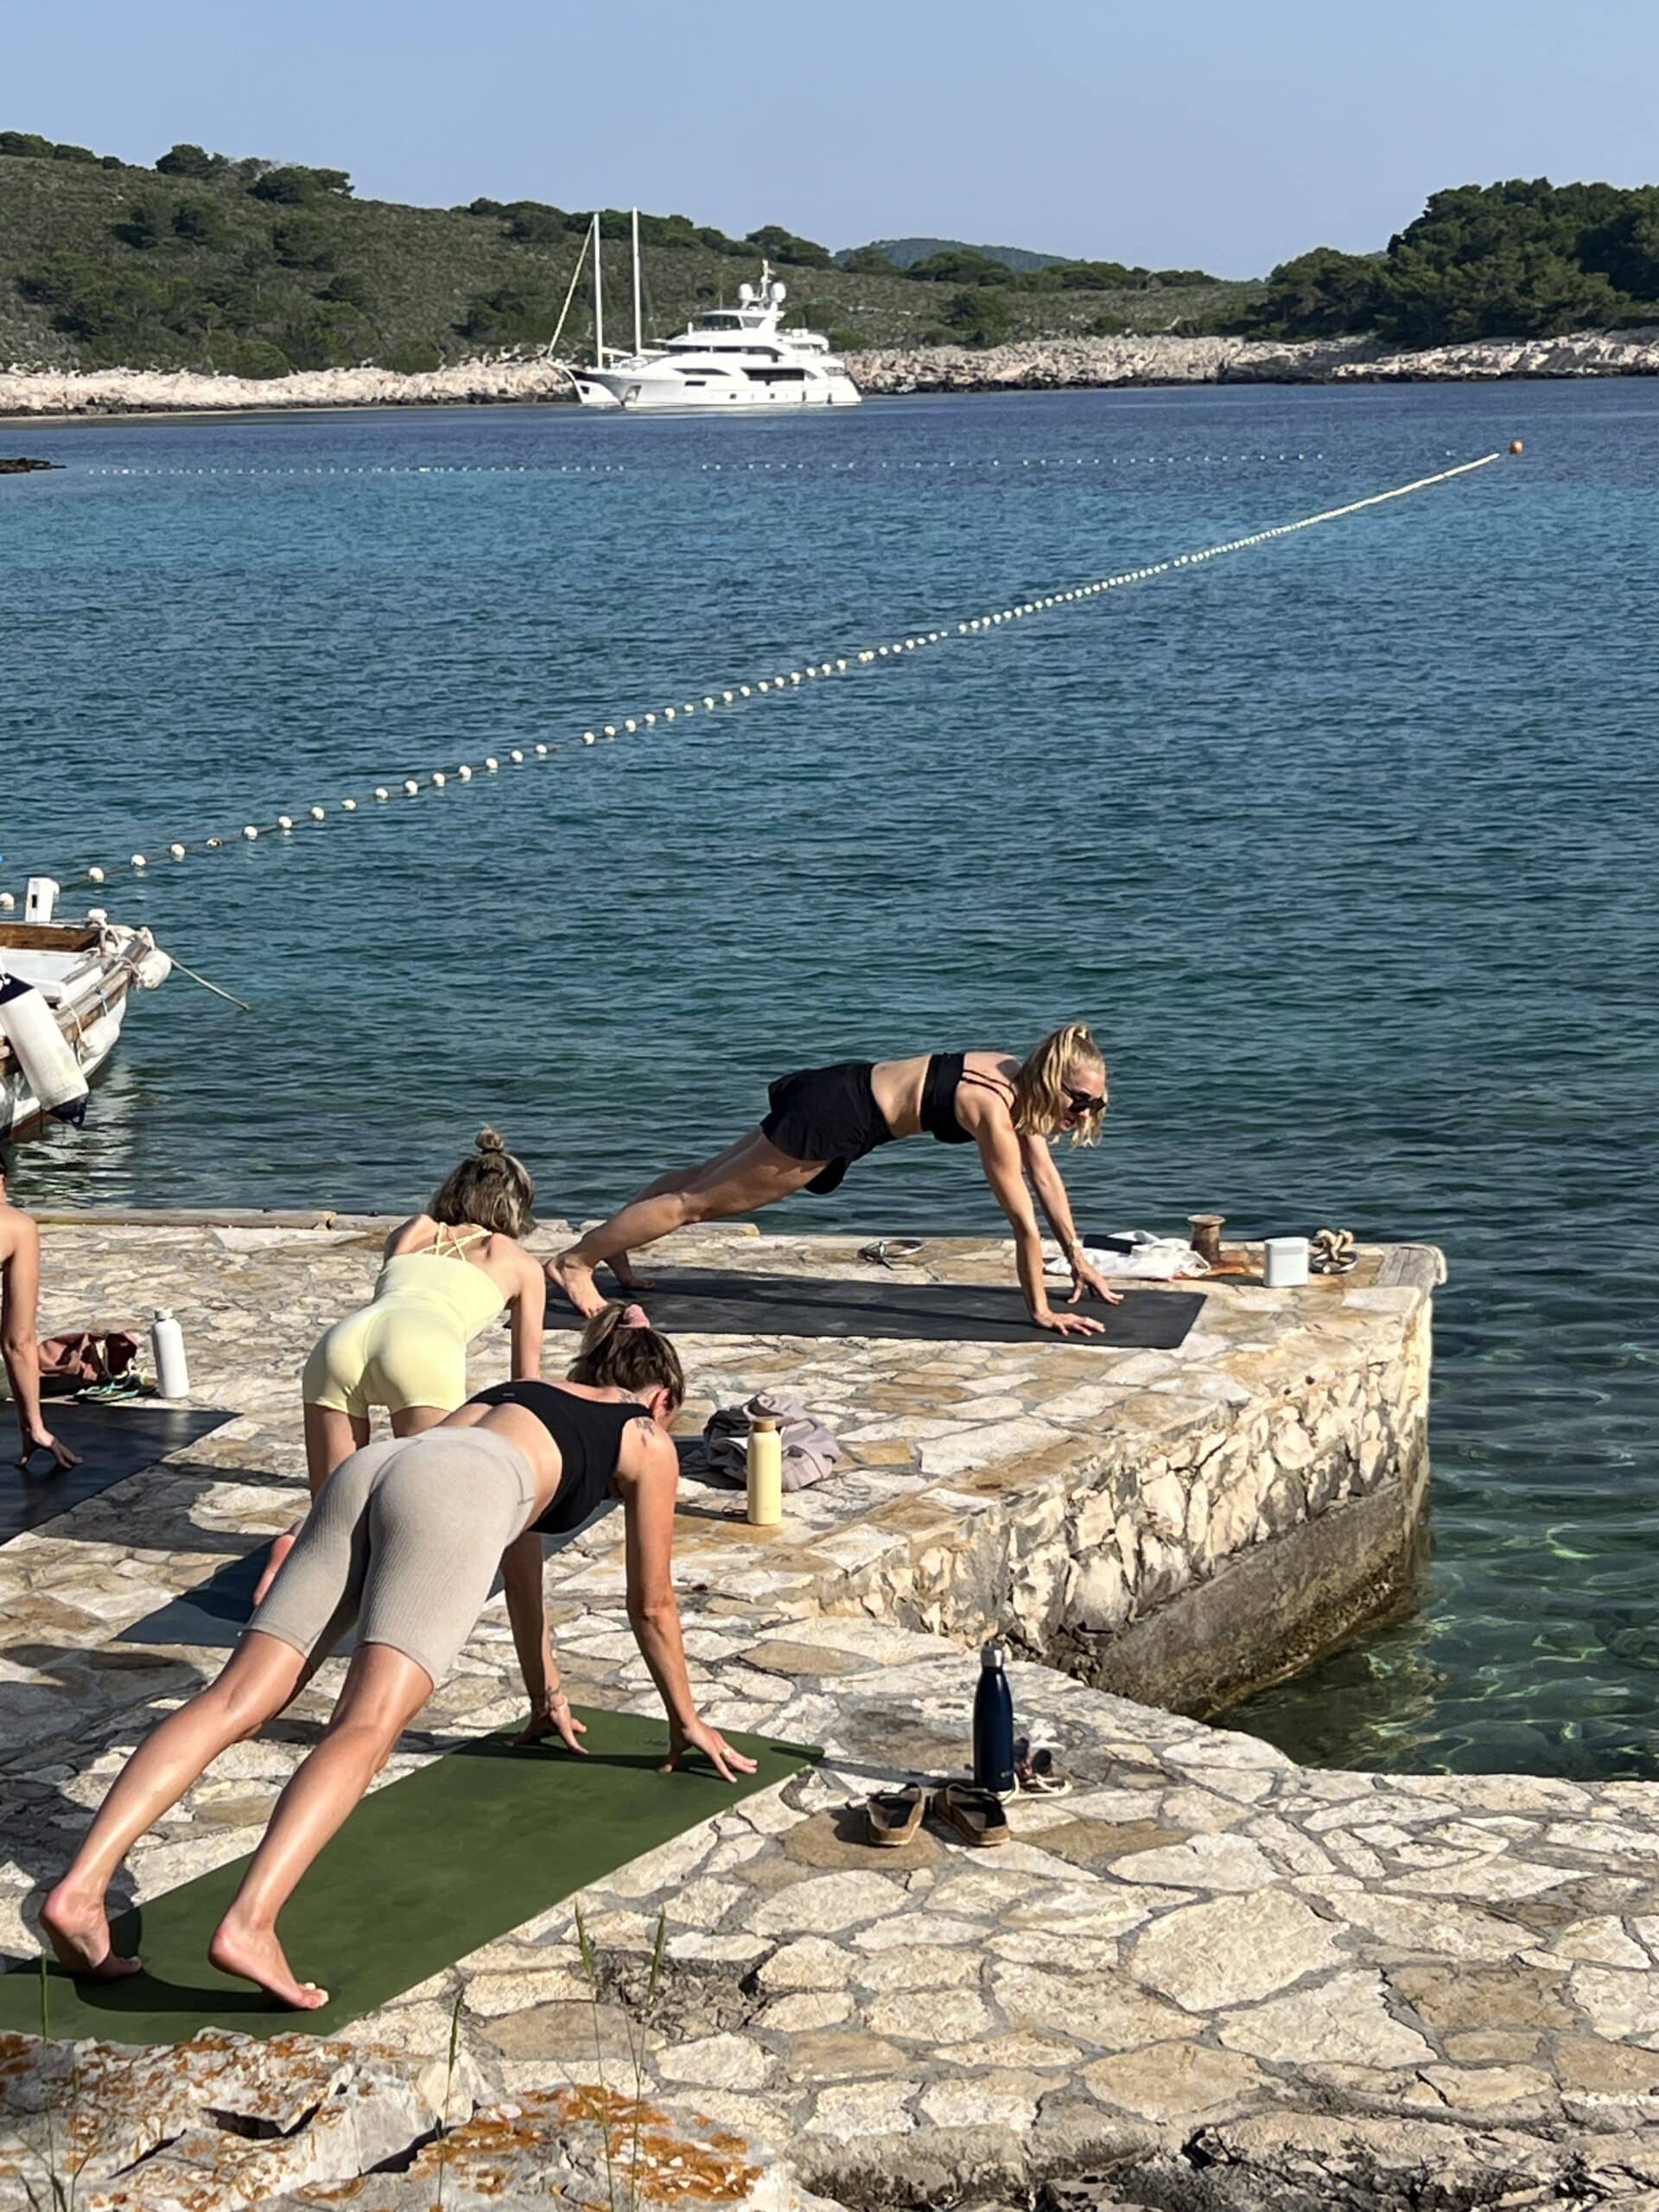 Drei Personen praktizieren Yoga auf einem Steinsteg am Meer, im Hintergrund ist eine Segelyacht vor Anker. Sie dehnen sich in der herabschauenden Hundestellung.